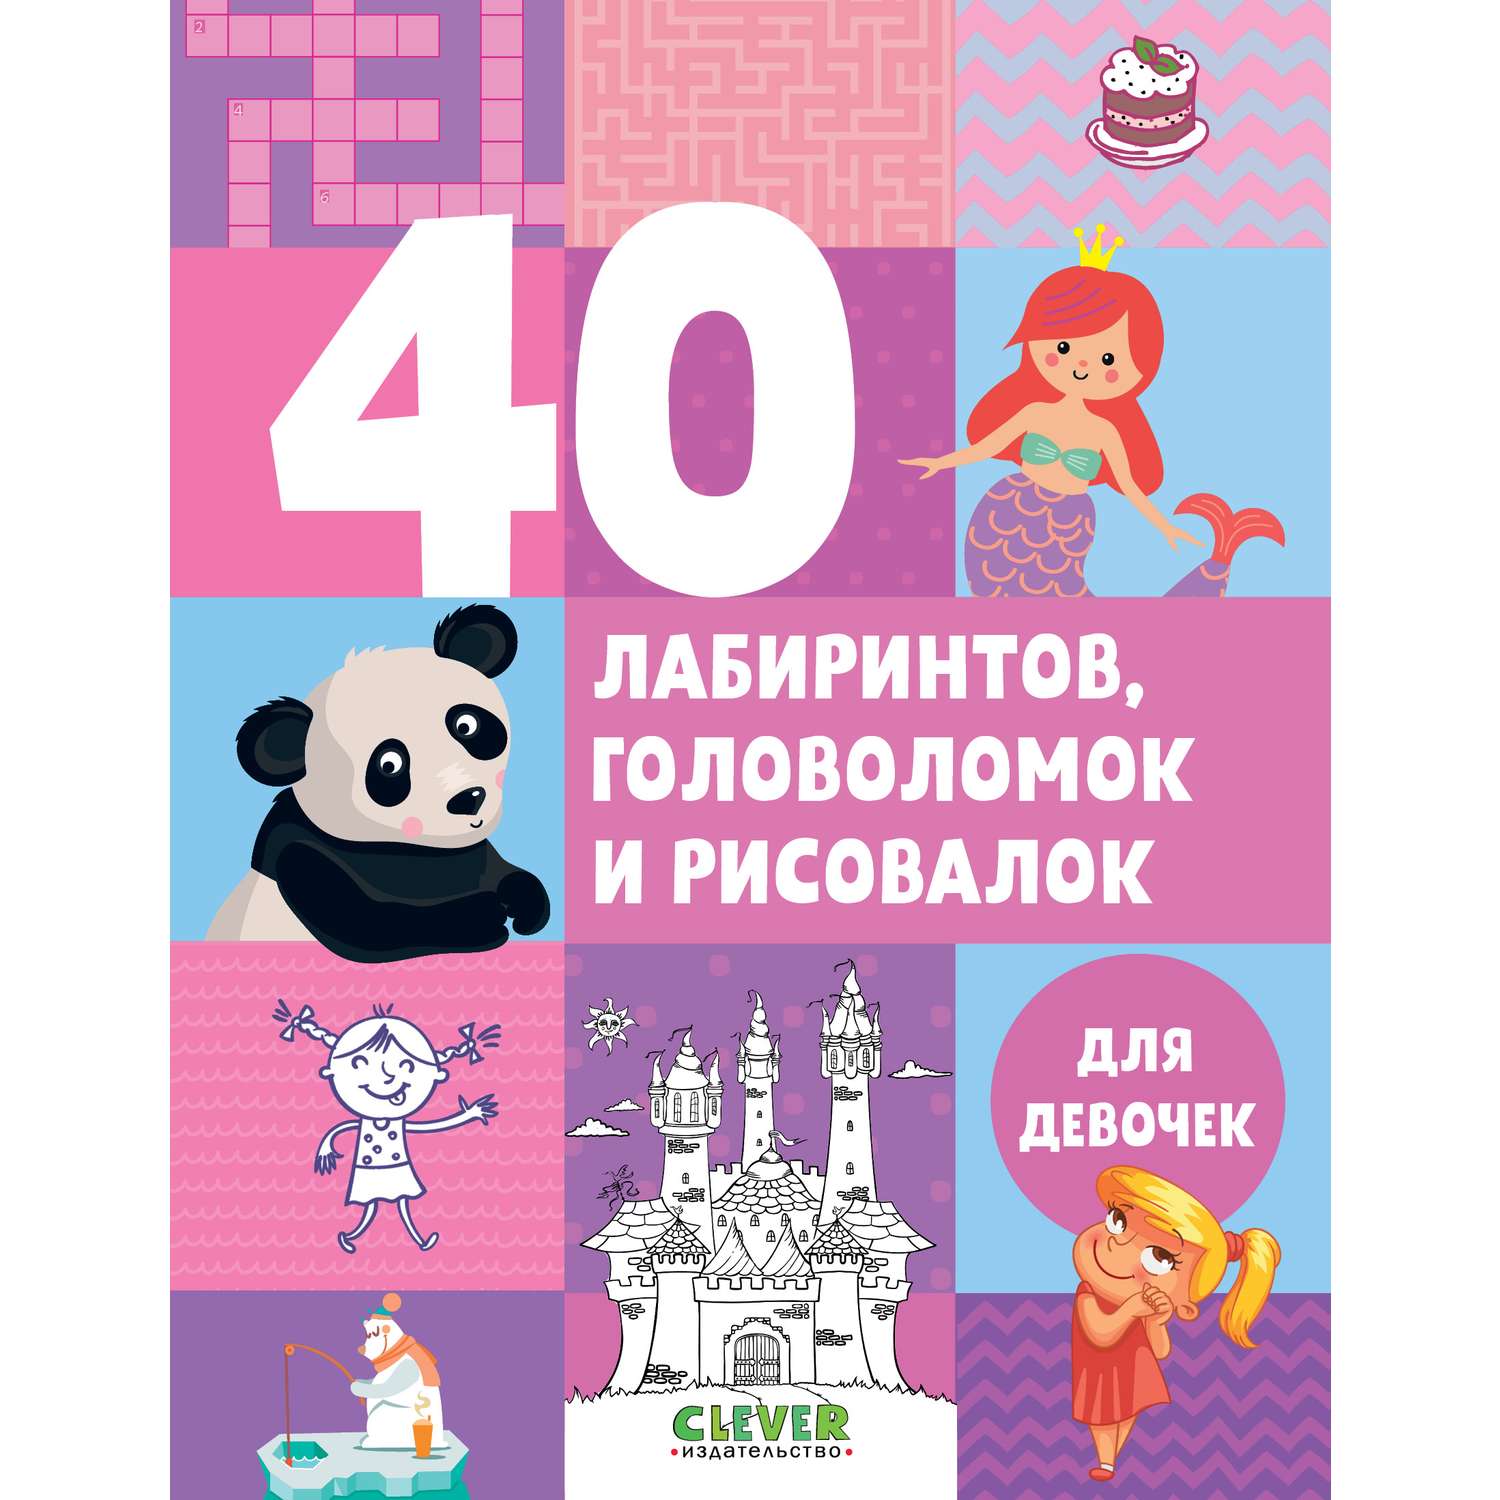 Книга Clever Издательство Рисуем и играем. 40 лабиринтов головоломок и рисовалок для девочек - фото 1